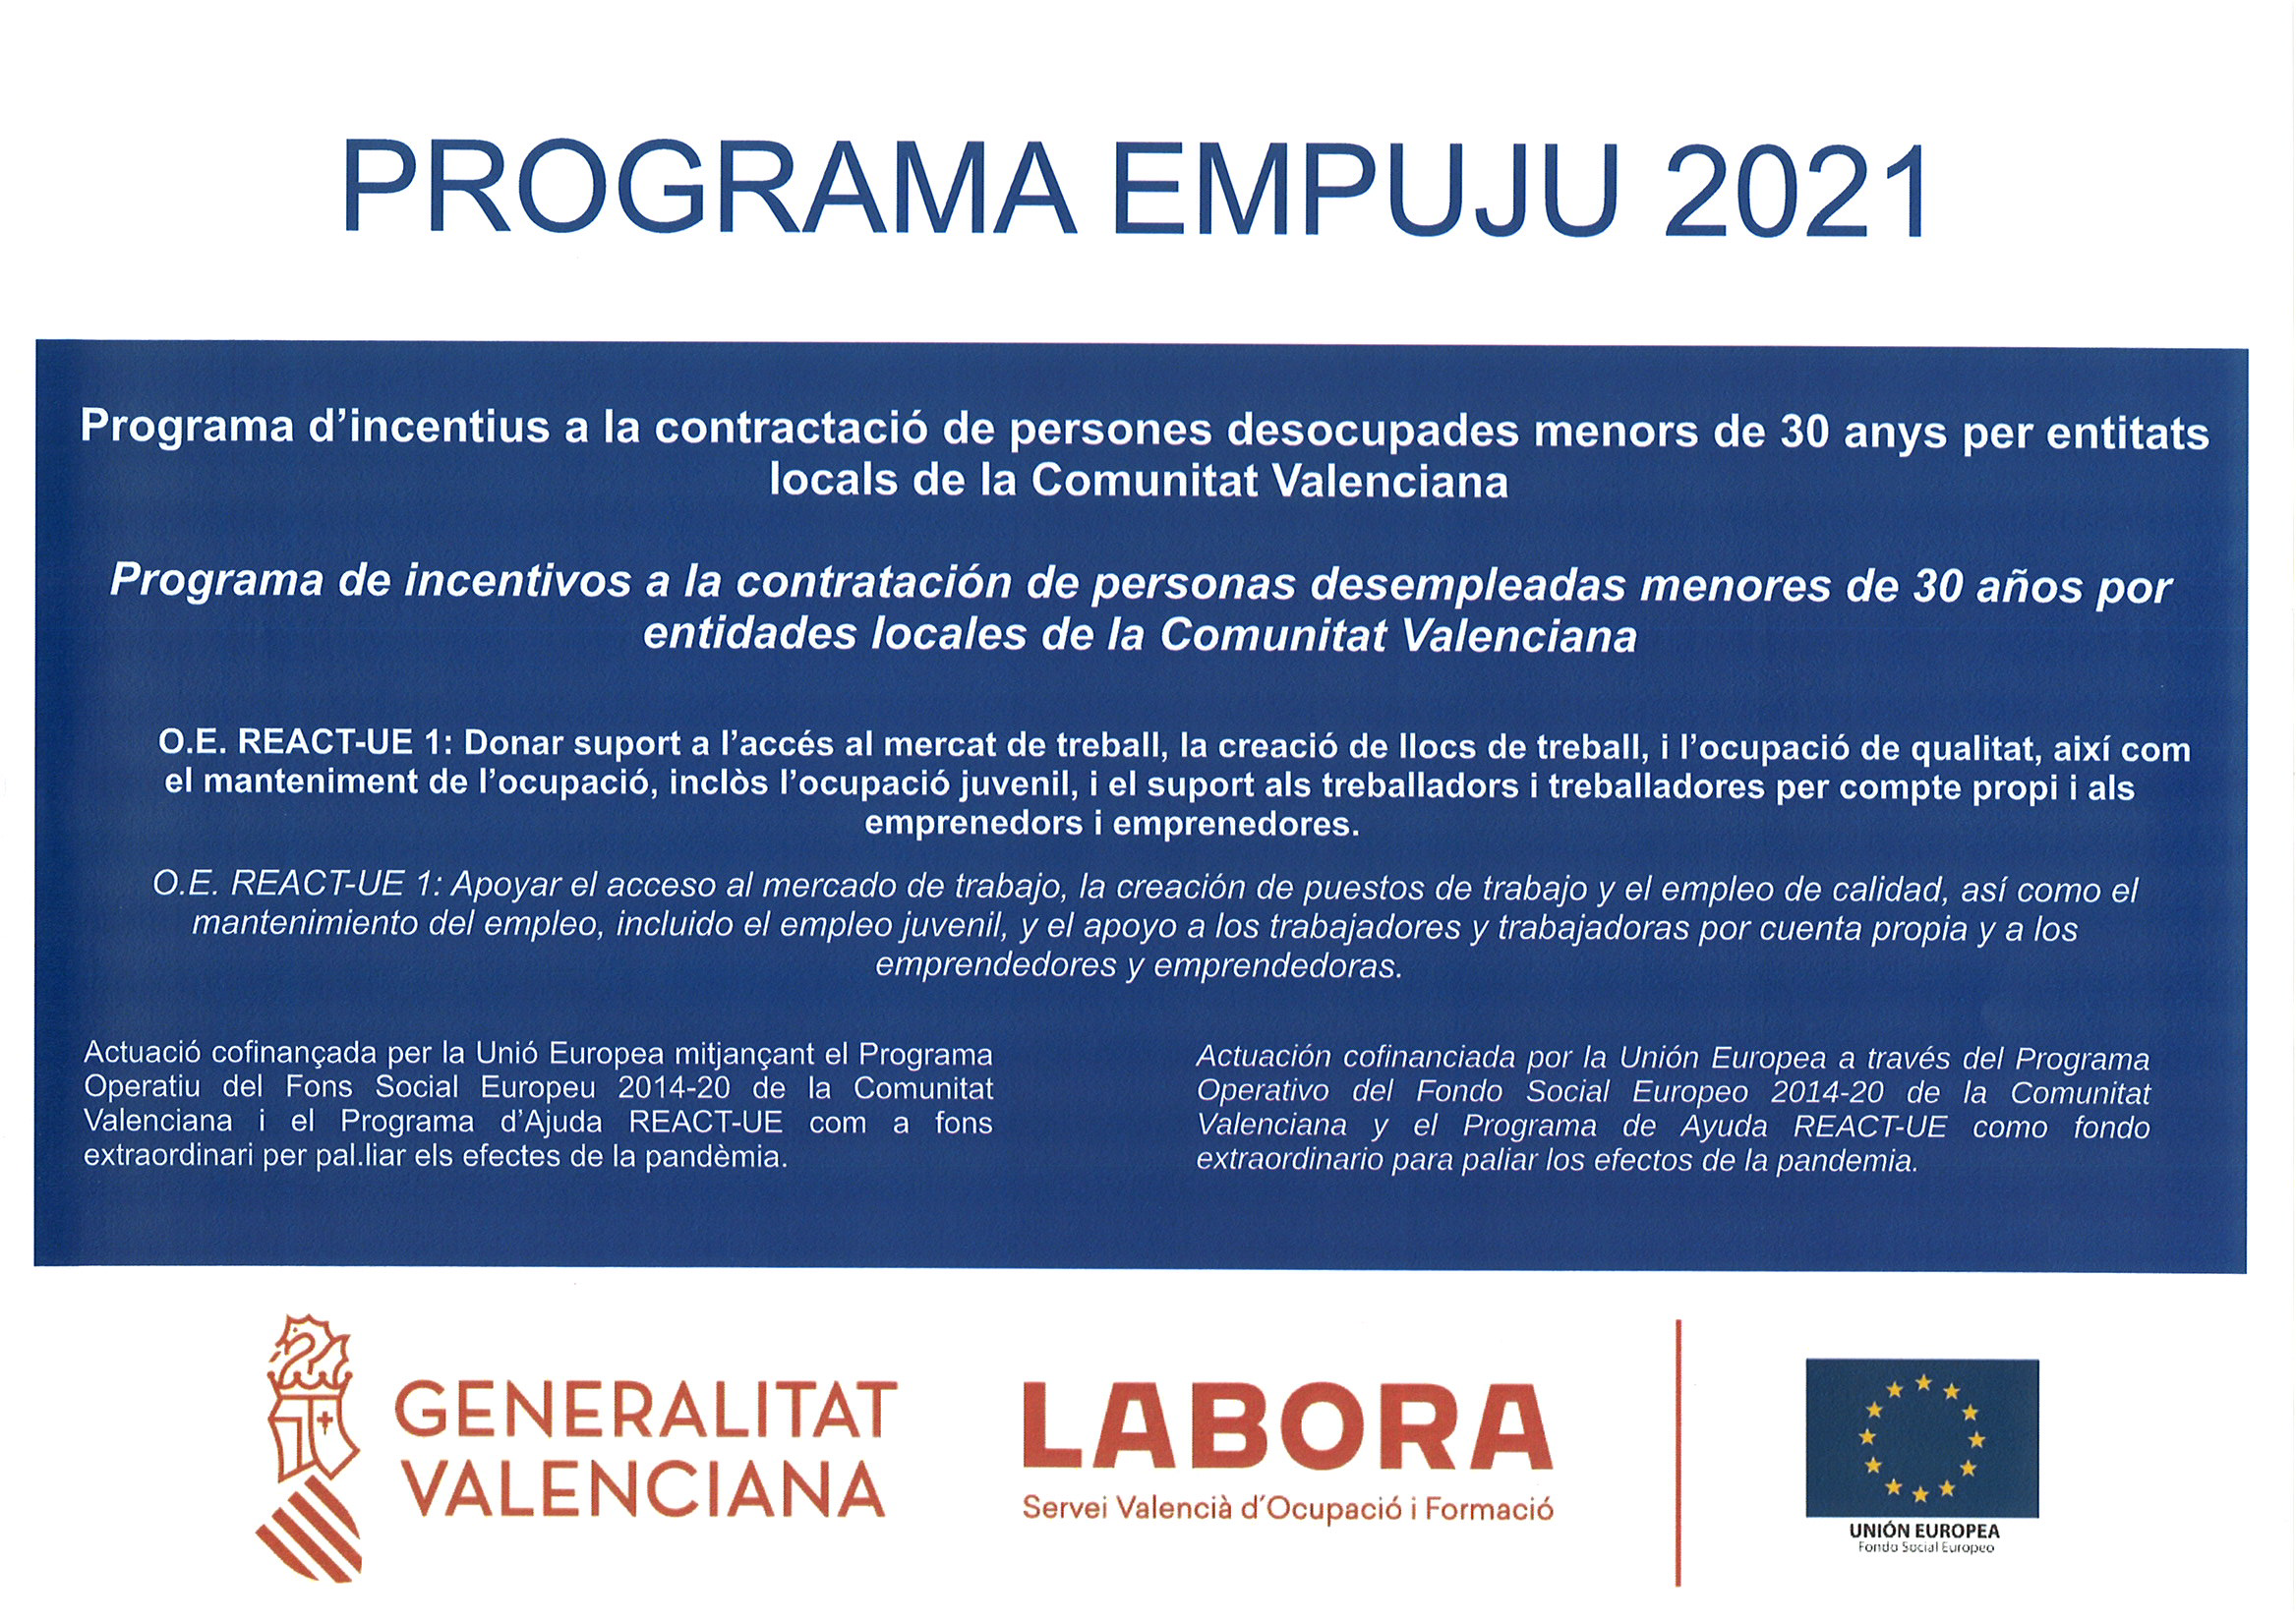 EMPUJU/2021/298/12 subvención 15192 euros, para la contratación temporal (exceptuado contratos formativos) jornada completa de personas desempleadas menores de 30 años edad en el marco del Programa Operativo del Fondo Social Europeo 2014-2020 C.Valenciana